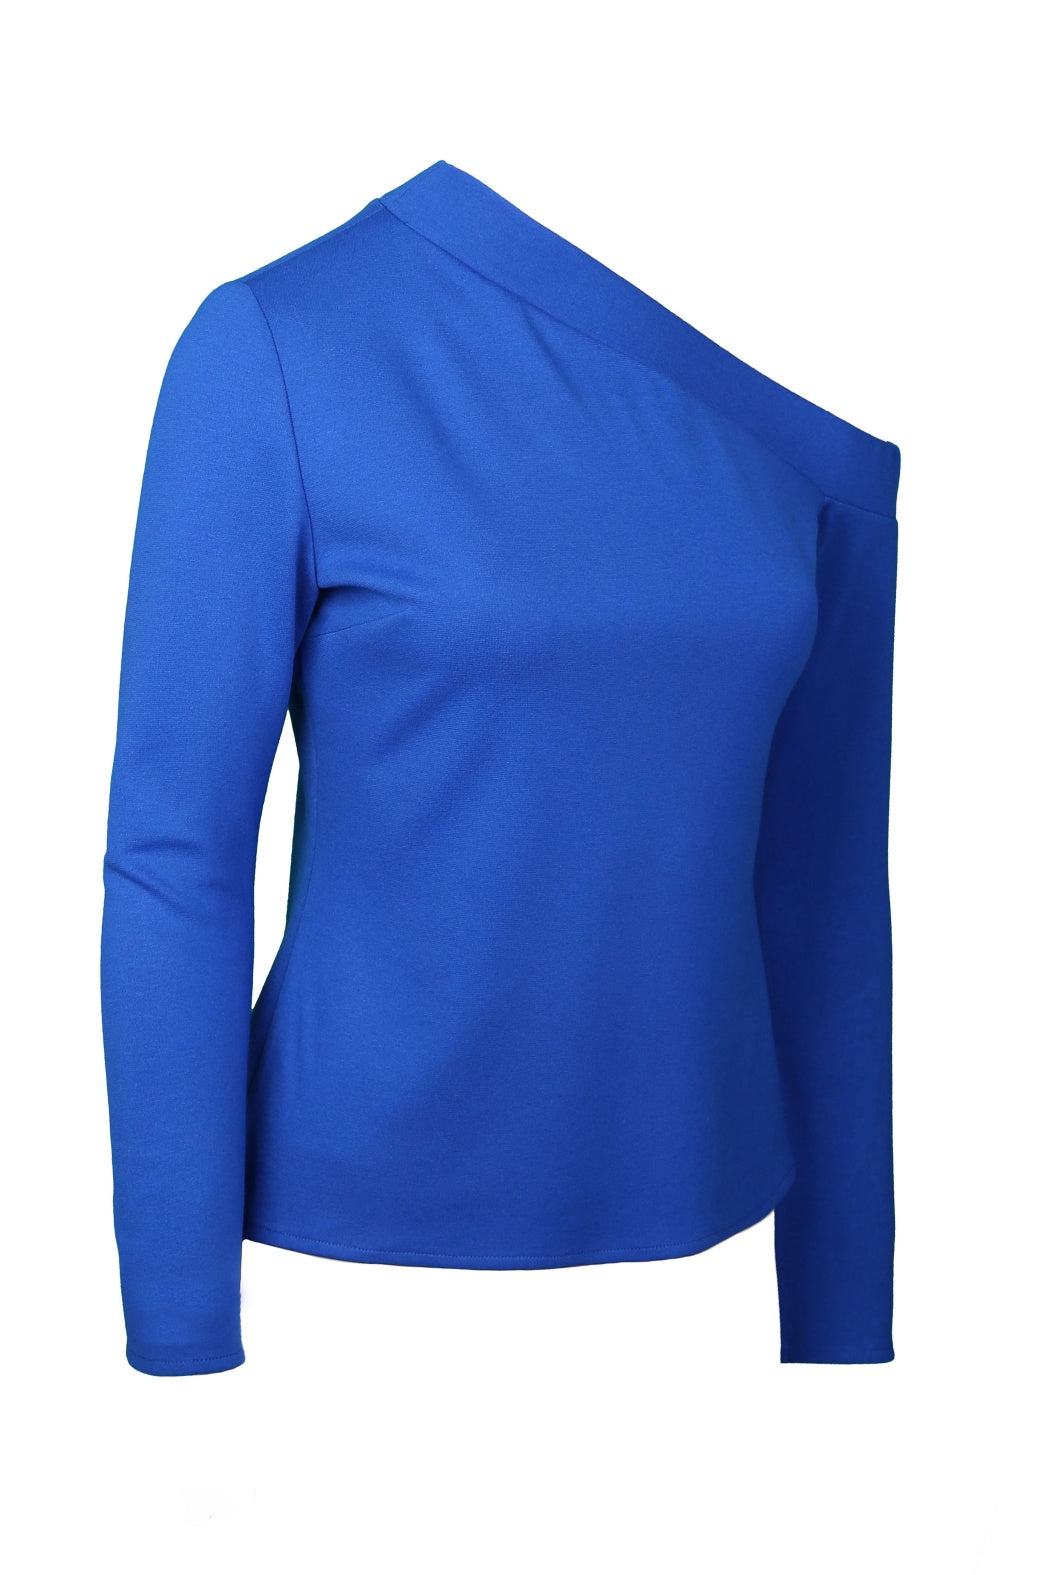 Niki Sax Blue One-Shoulder Knitwear Blouse